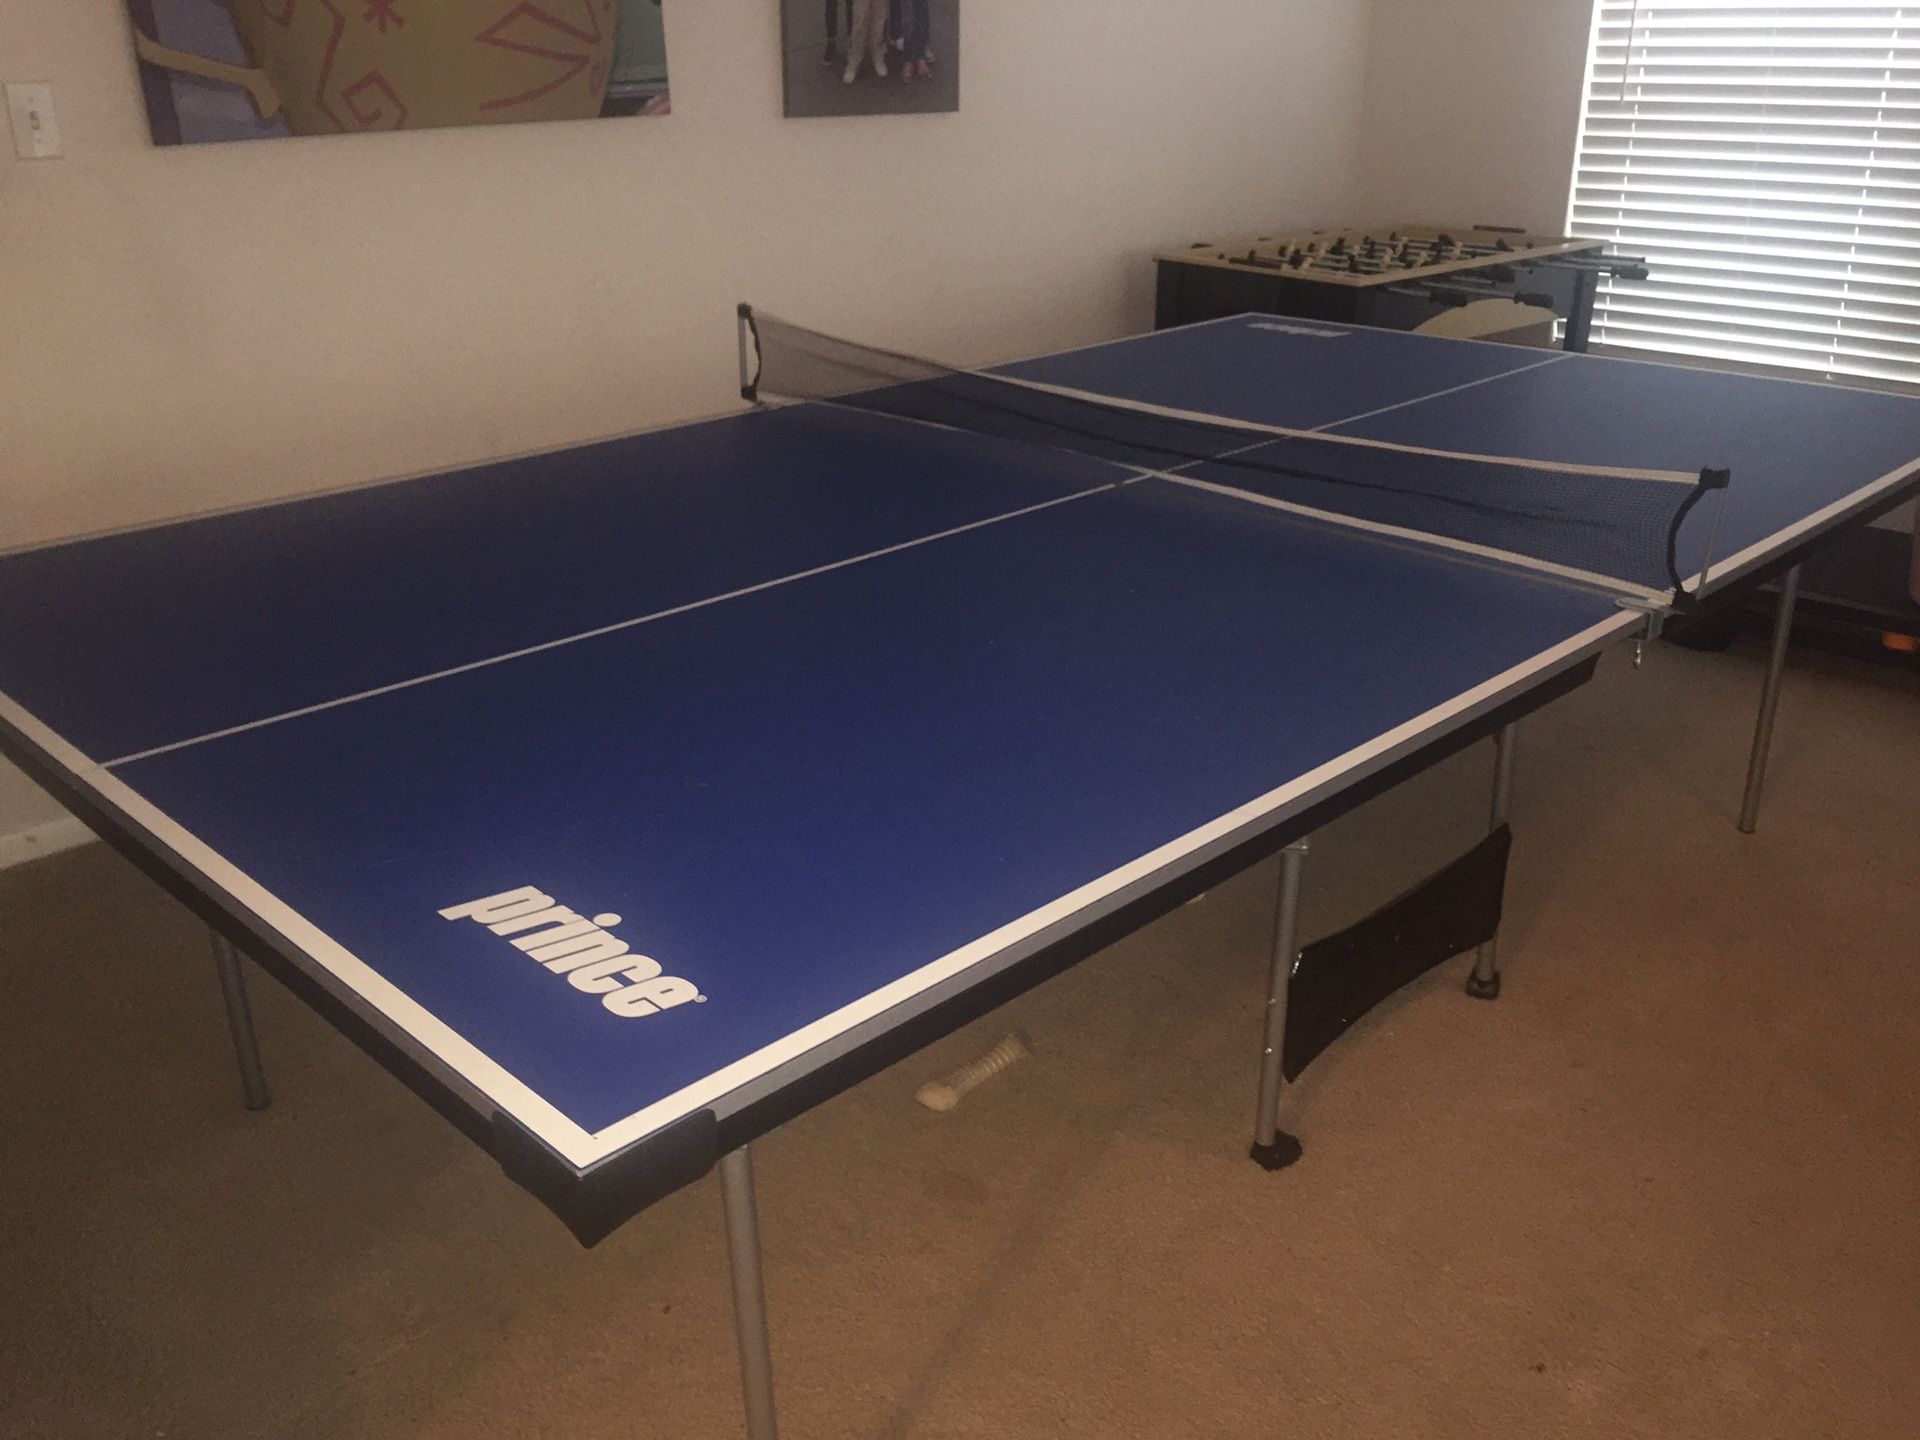 Prince ping pong table